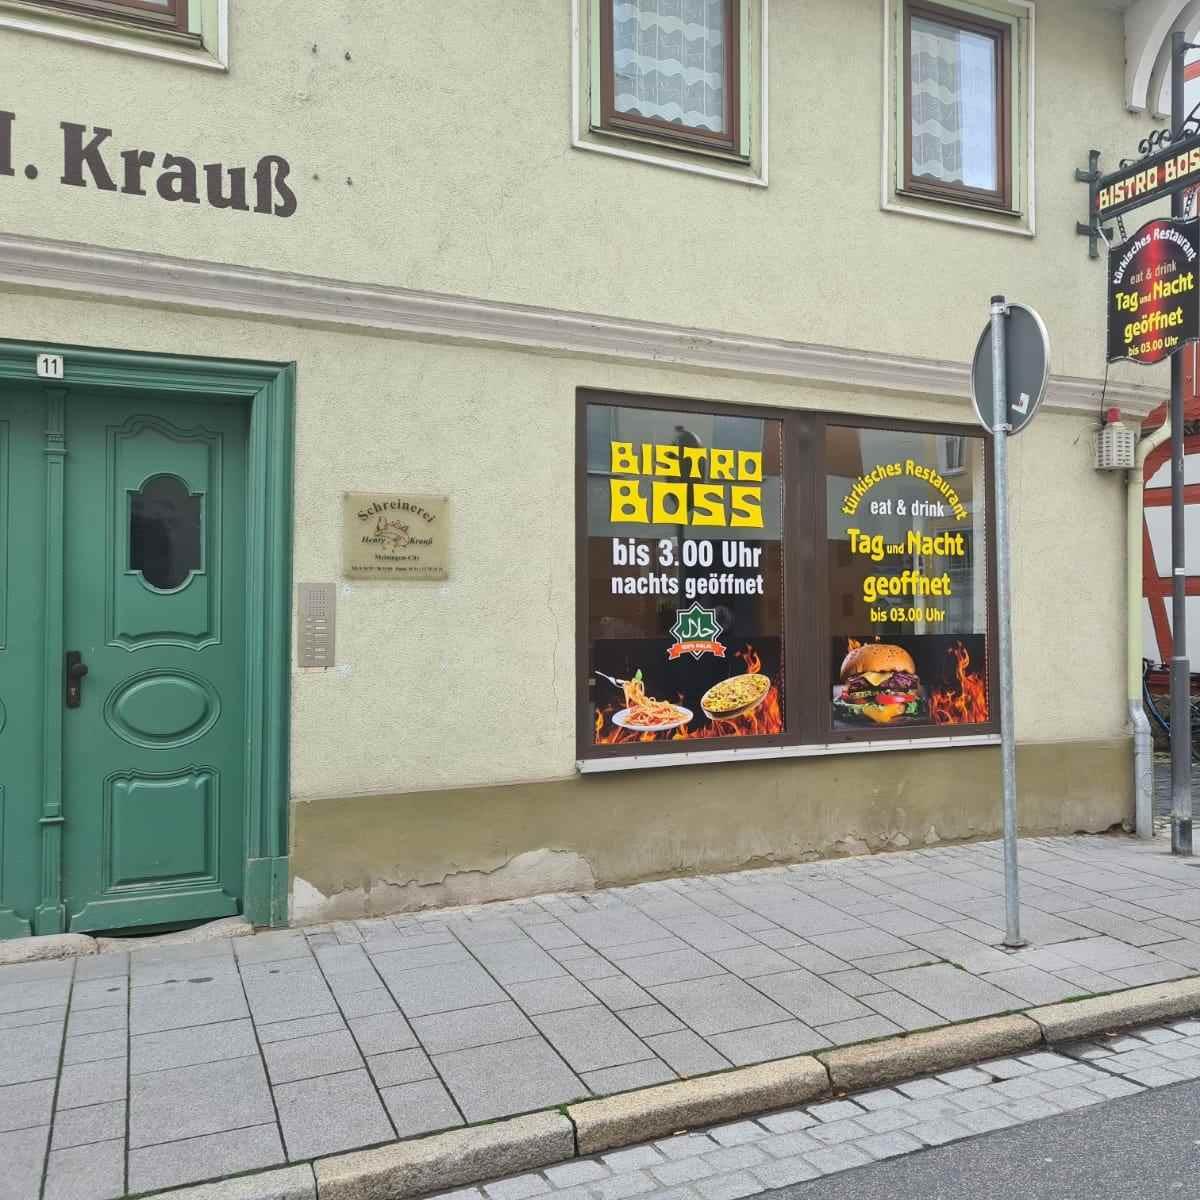 Restaurant "Bistro Boss" in Meiningen